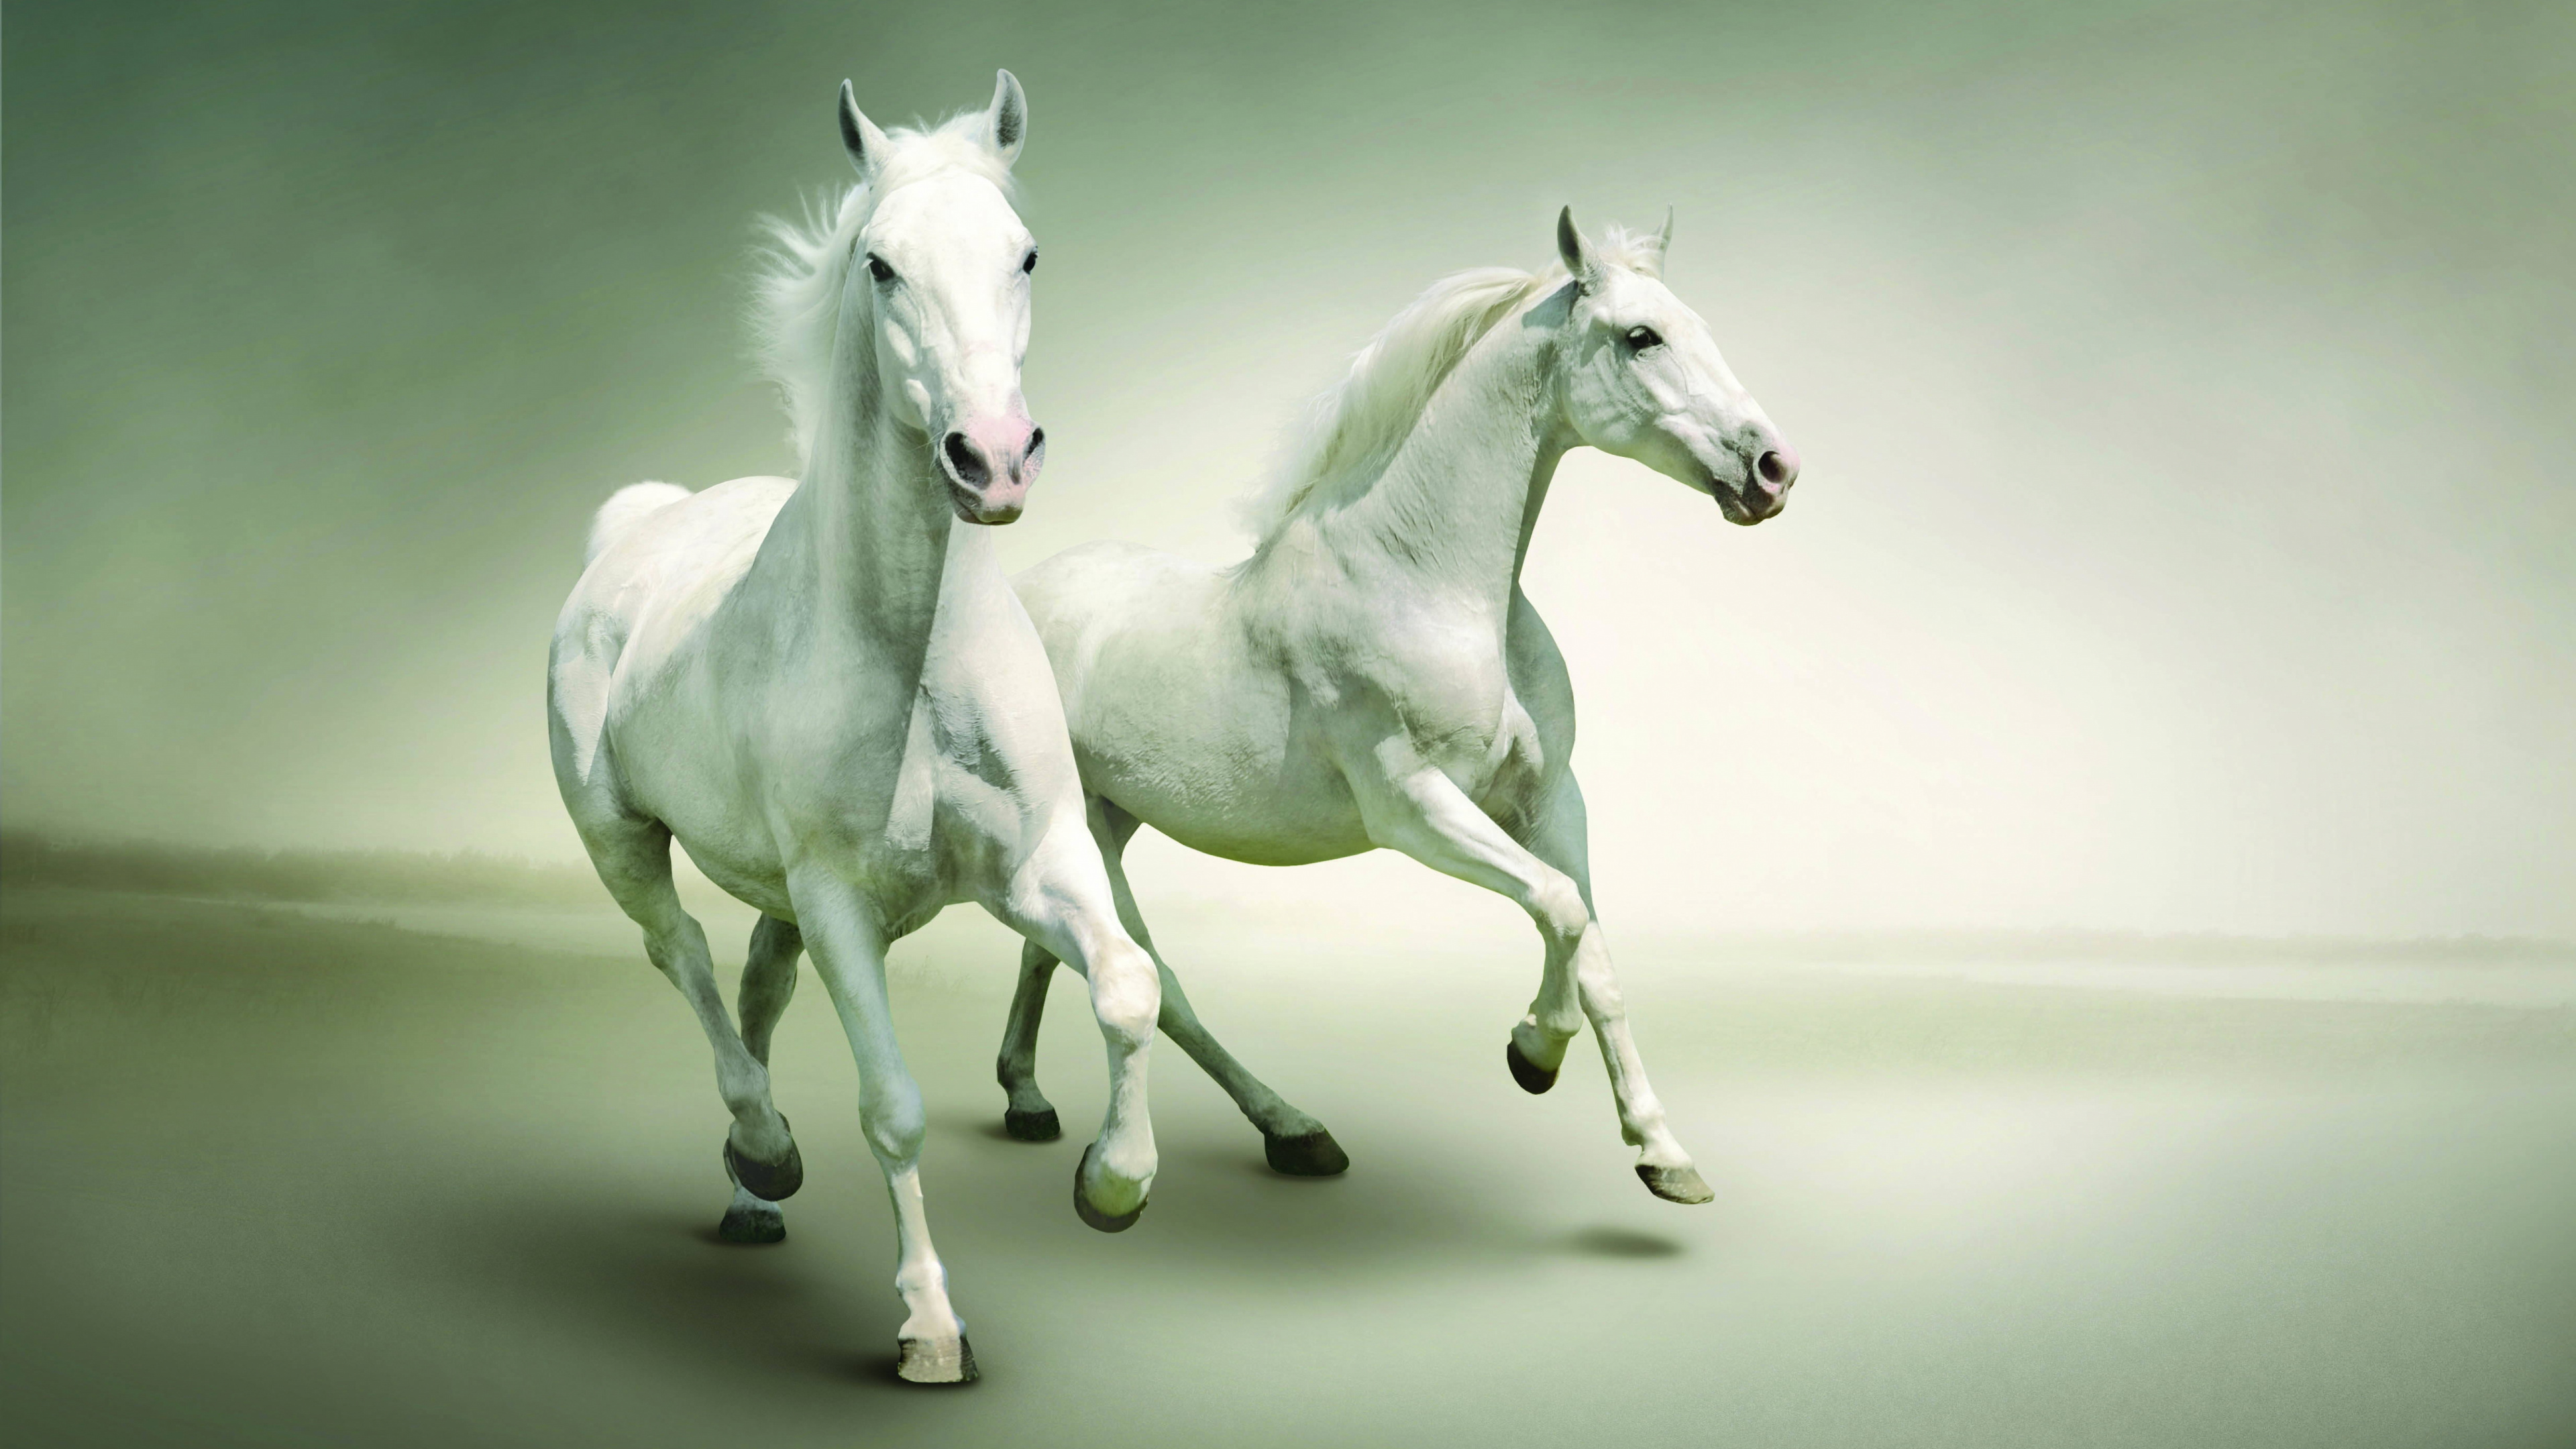 Weißes Pferd Mit Schwarz-weiß Gepunktetem Hemd. Wallpaper in 3840x2160 Resolution